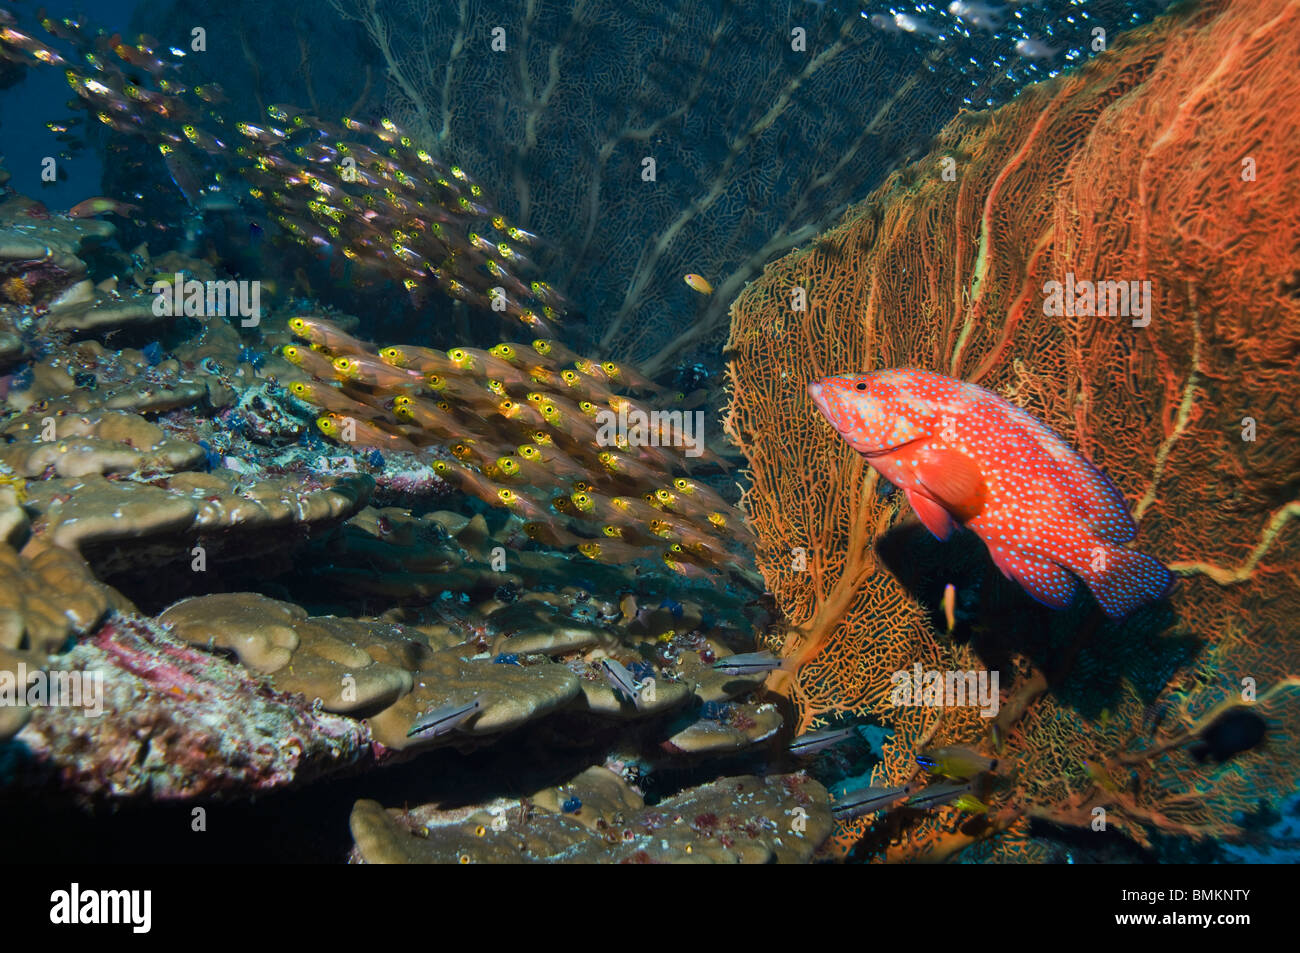 Korallen Hirschkuh mit Gorgonien, Jagd Pygmäen Kehrmaschinen am Korallenriff.  Andamanensee, Thailand. Stockfoto